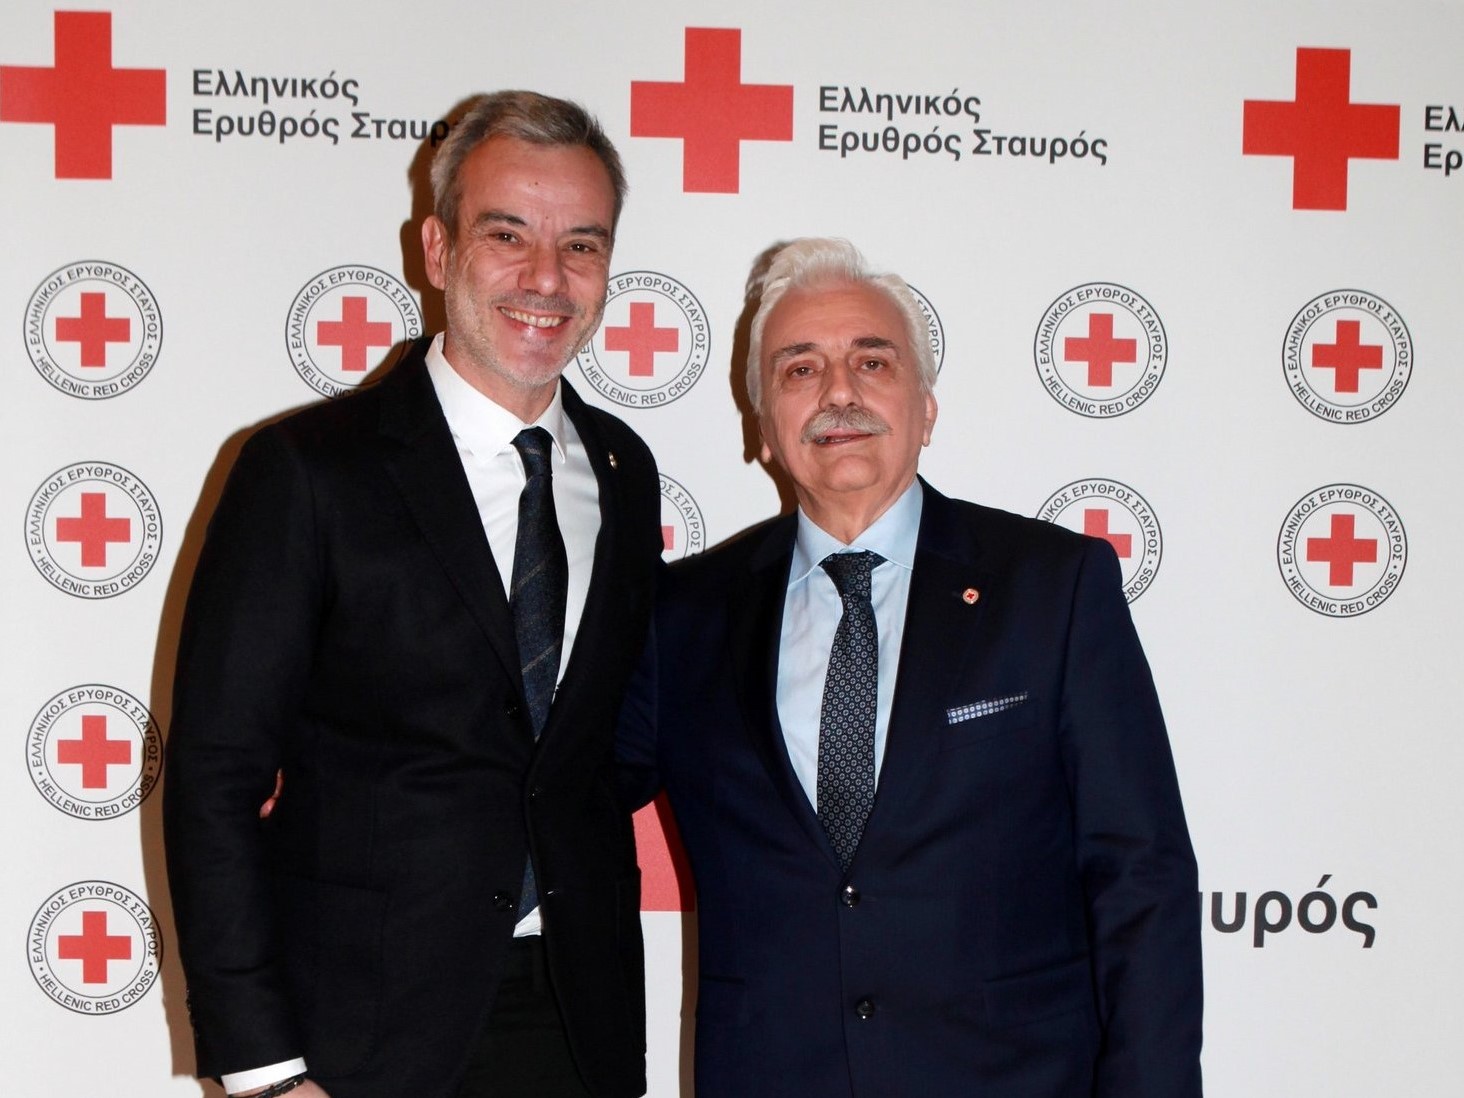 Ελληνικός Ερυθρός Σταυρός : Συναυλία με τραγούδια κορυφαίων Ελλήνων συνθετών στη Θεσσαλονίκη